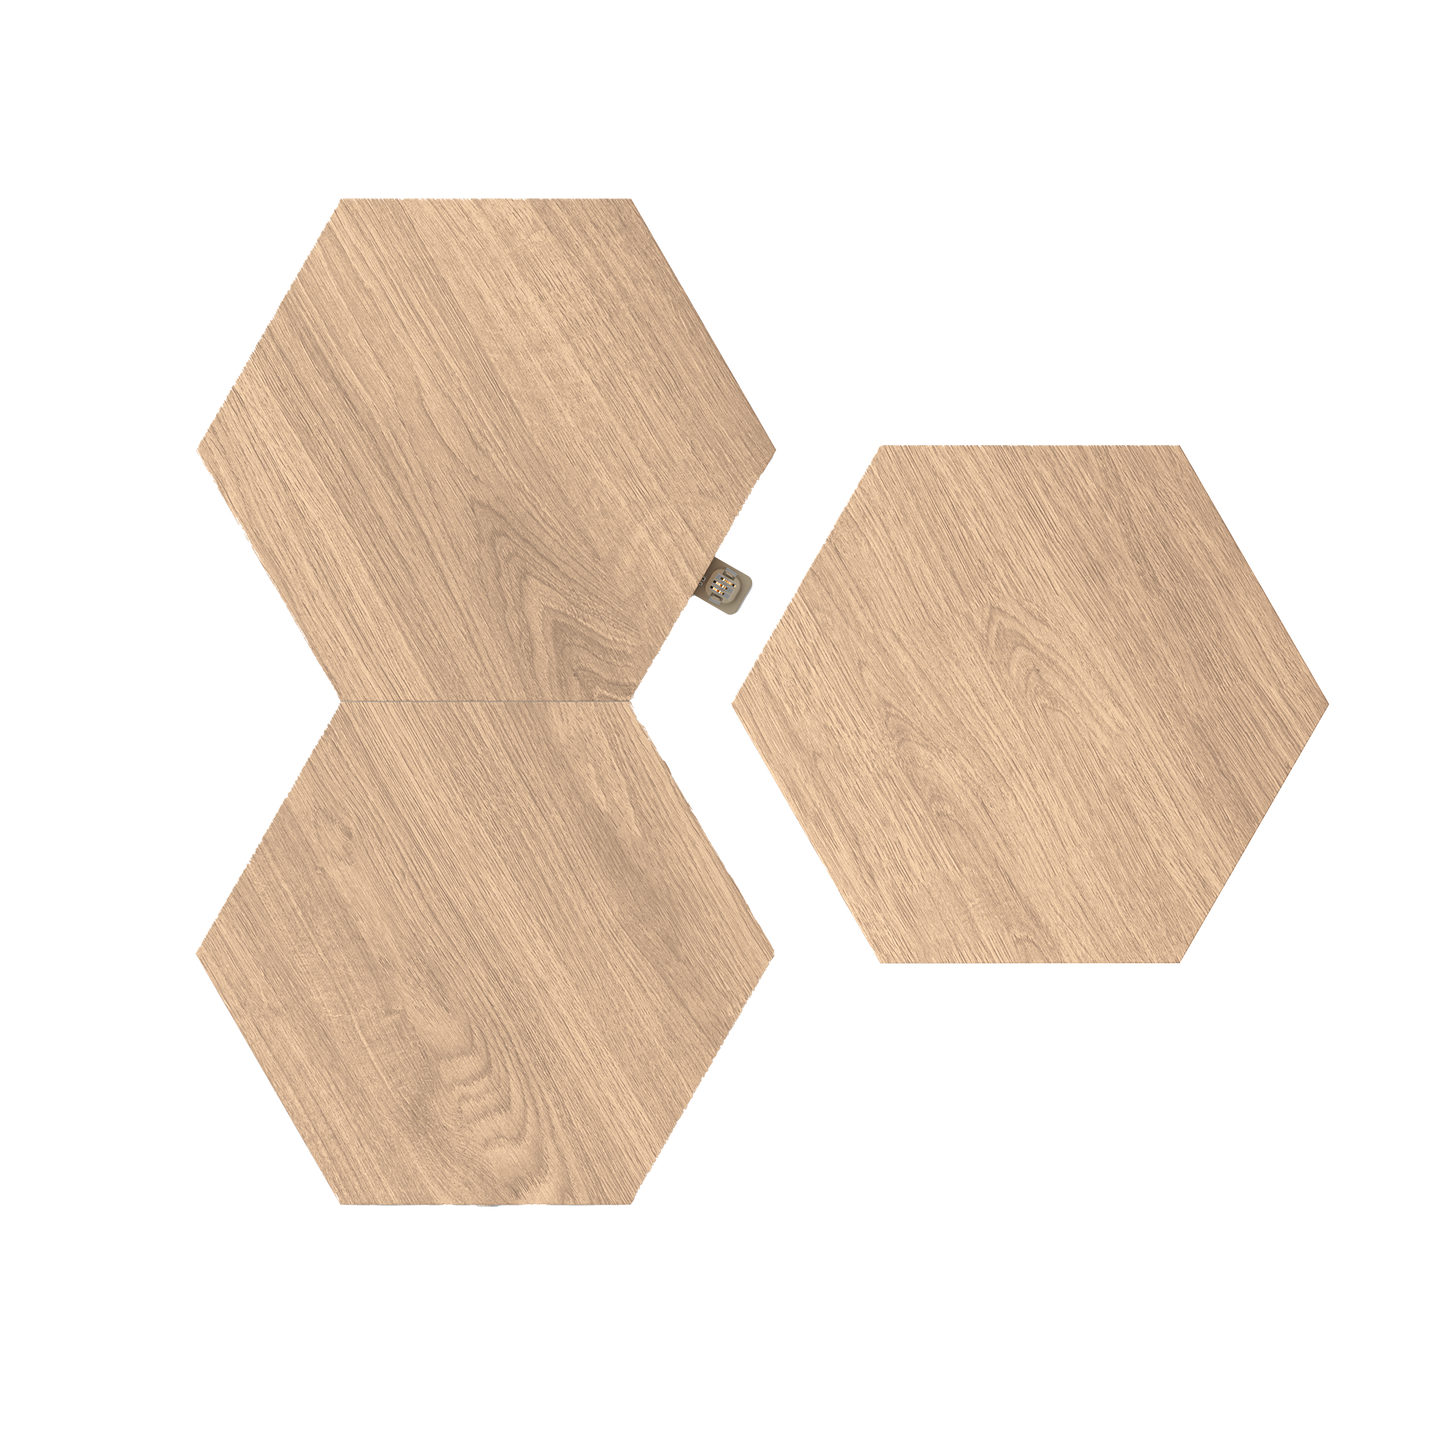 Nanoleaf Elements Wood Look Expansion Pack (3 Panels)